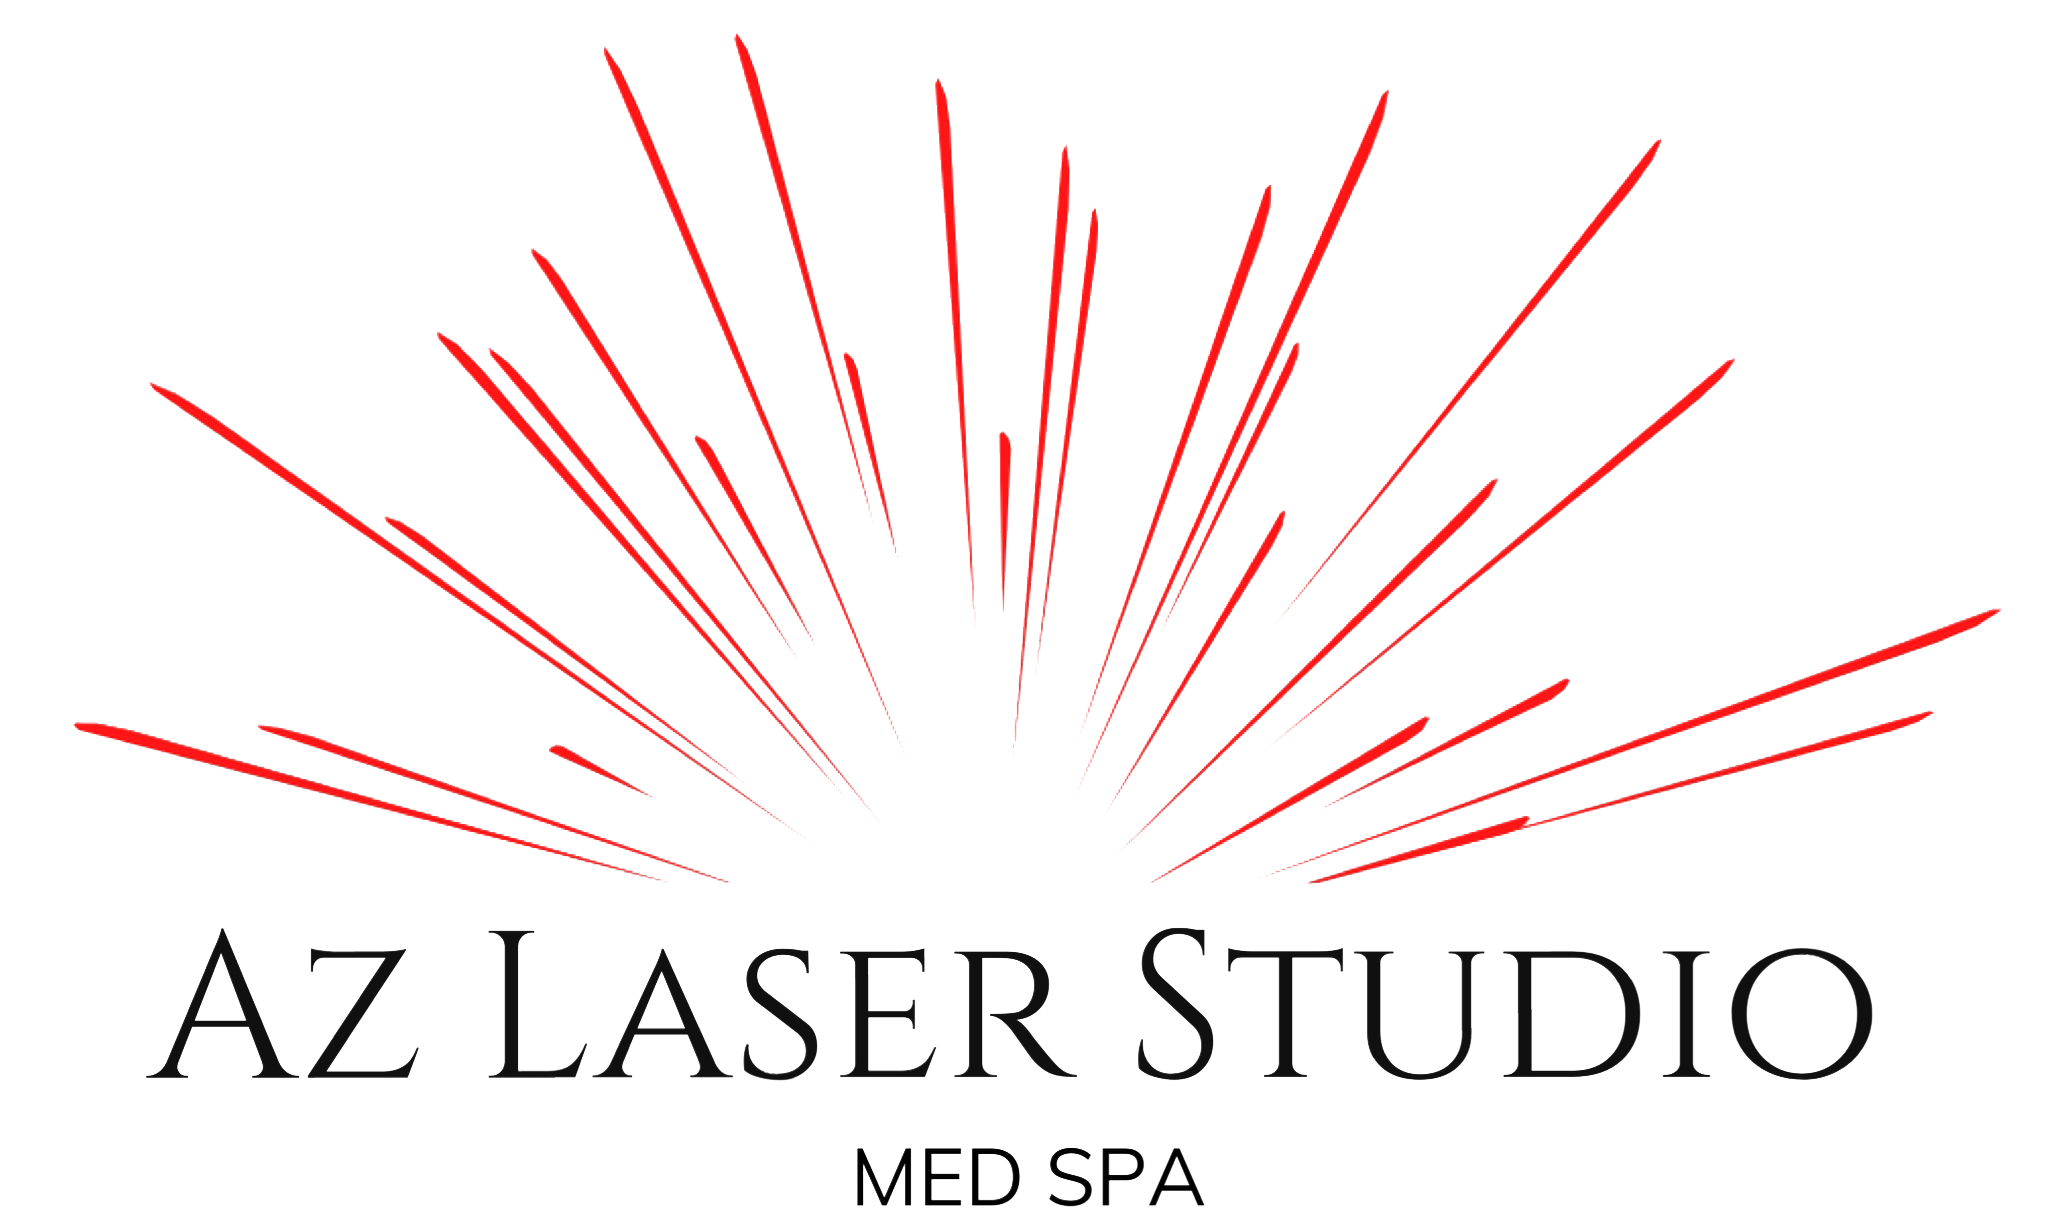 AZ Laser Studio Med Spa